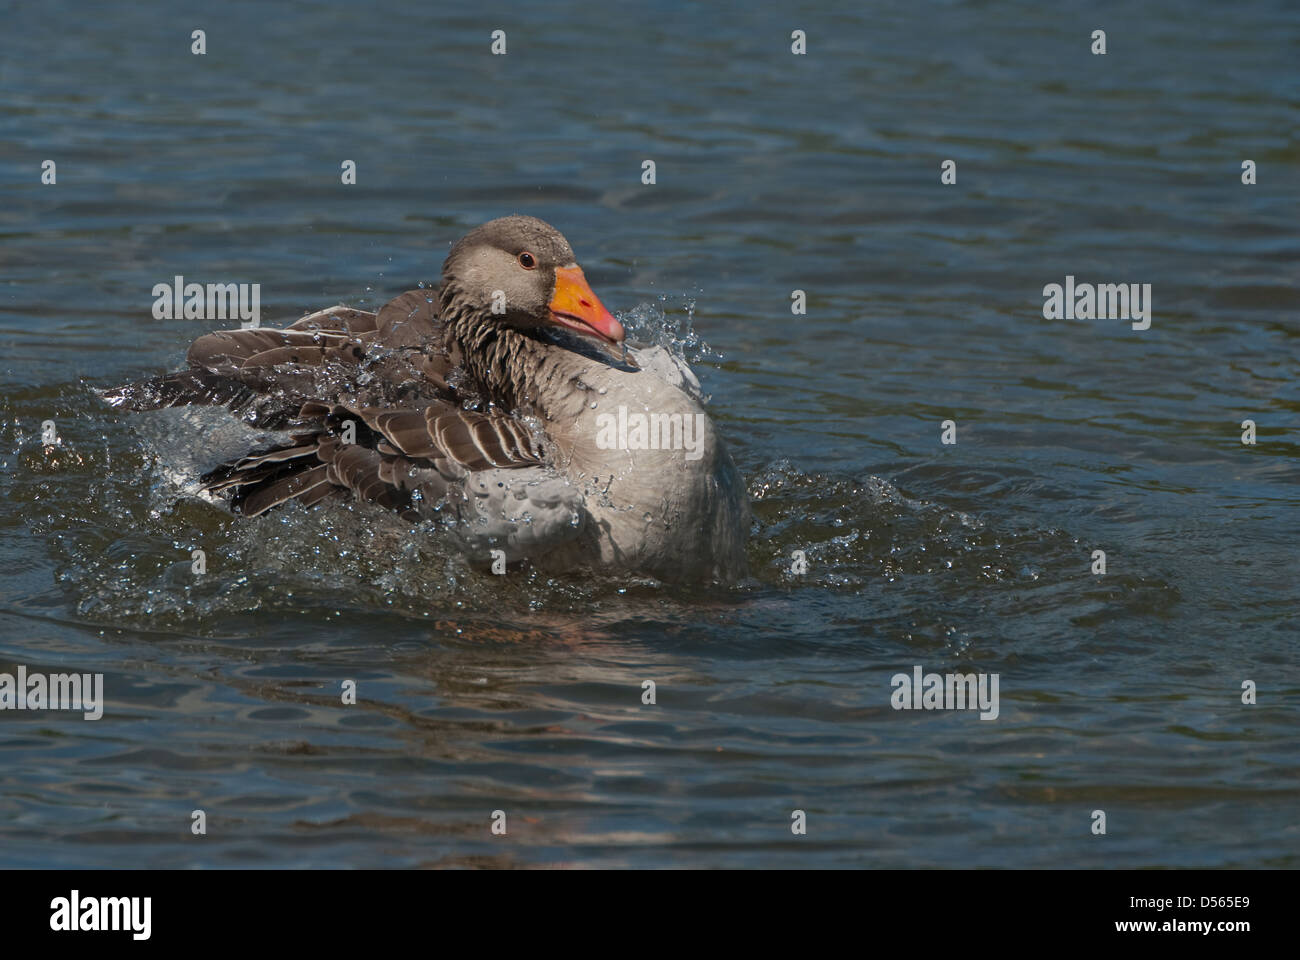 Adult Greylag Goose bathing Stock Photo